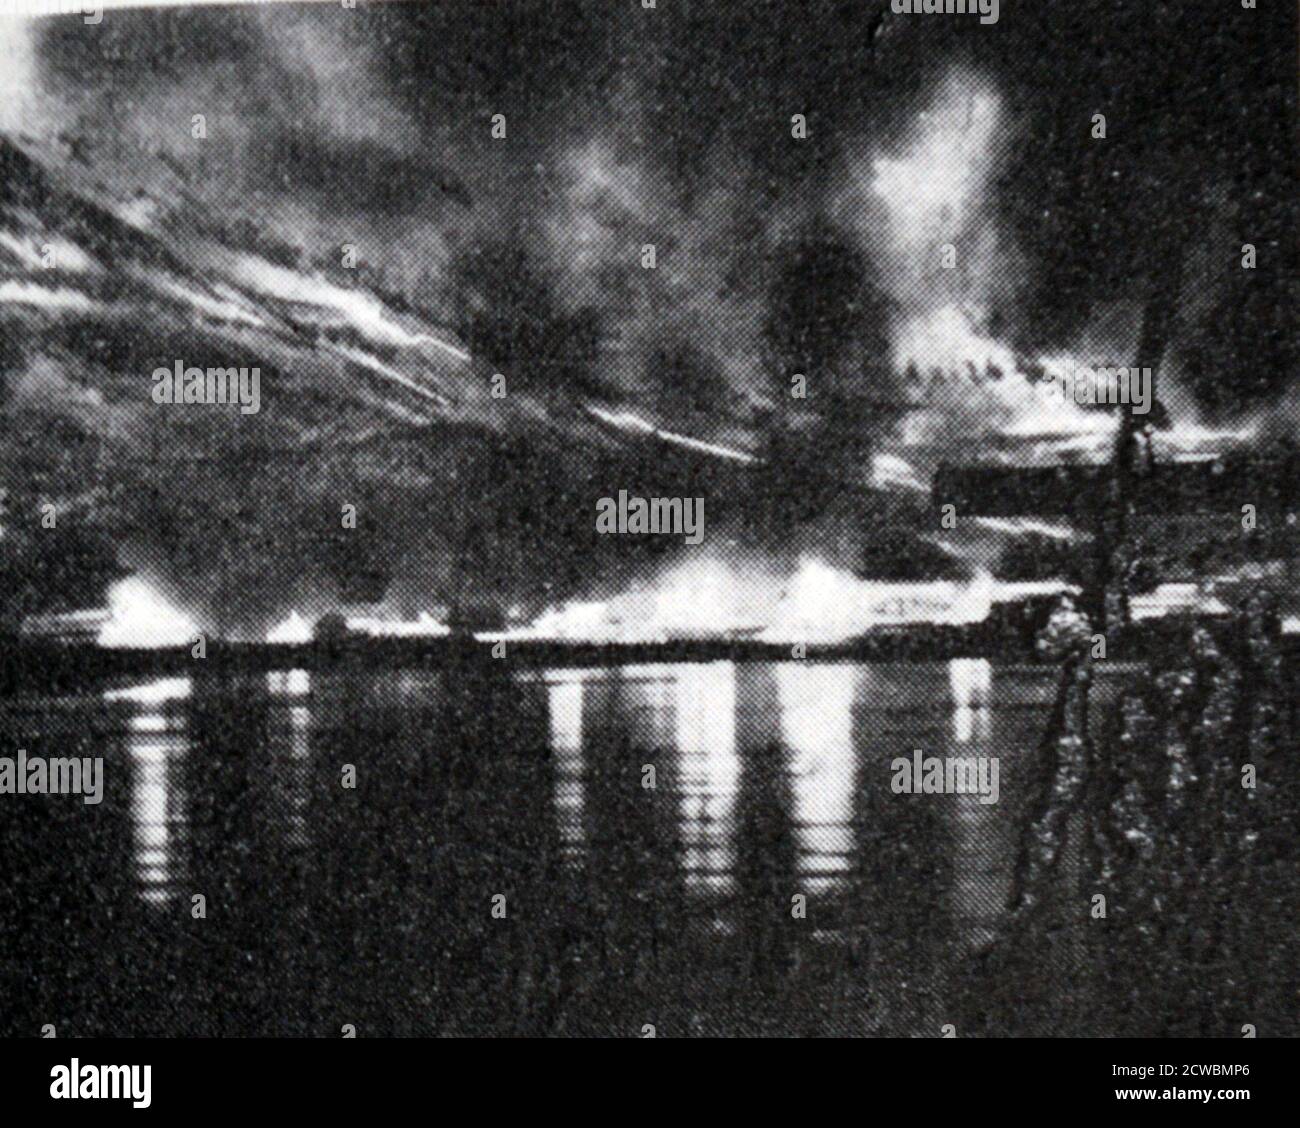 Fotografia in bianco e nero della Campagna norvegese della seconda guerra mondiale, da aprile a giugno 1940; i cacciatorpediniere britannici aprono il fuoco sulle posizioni nemiche. Foto Stock